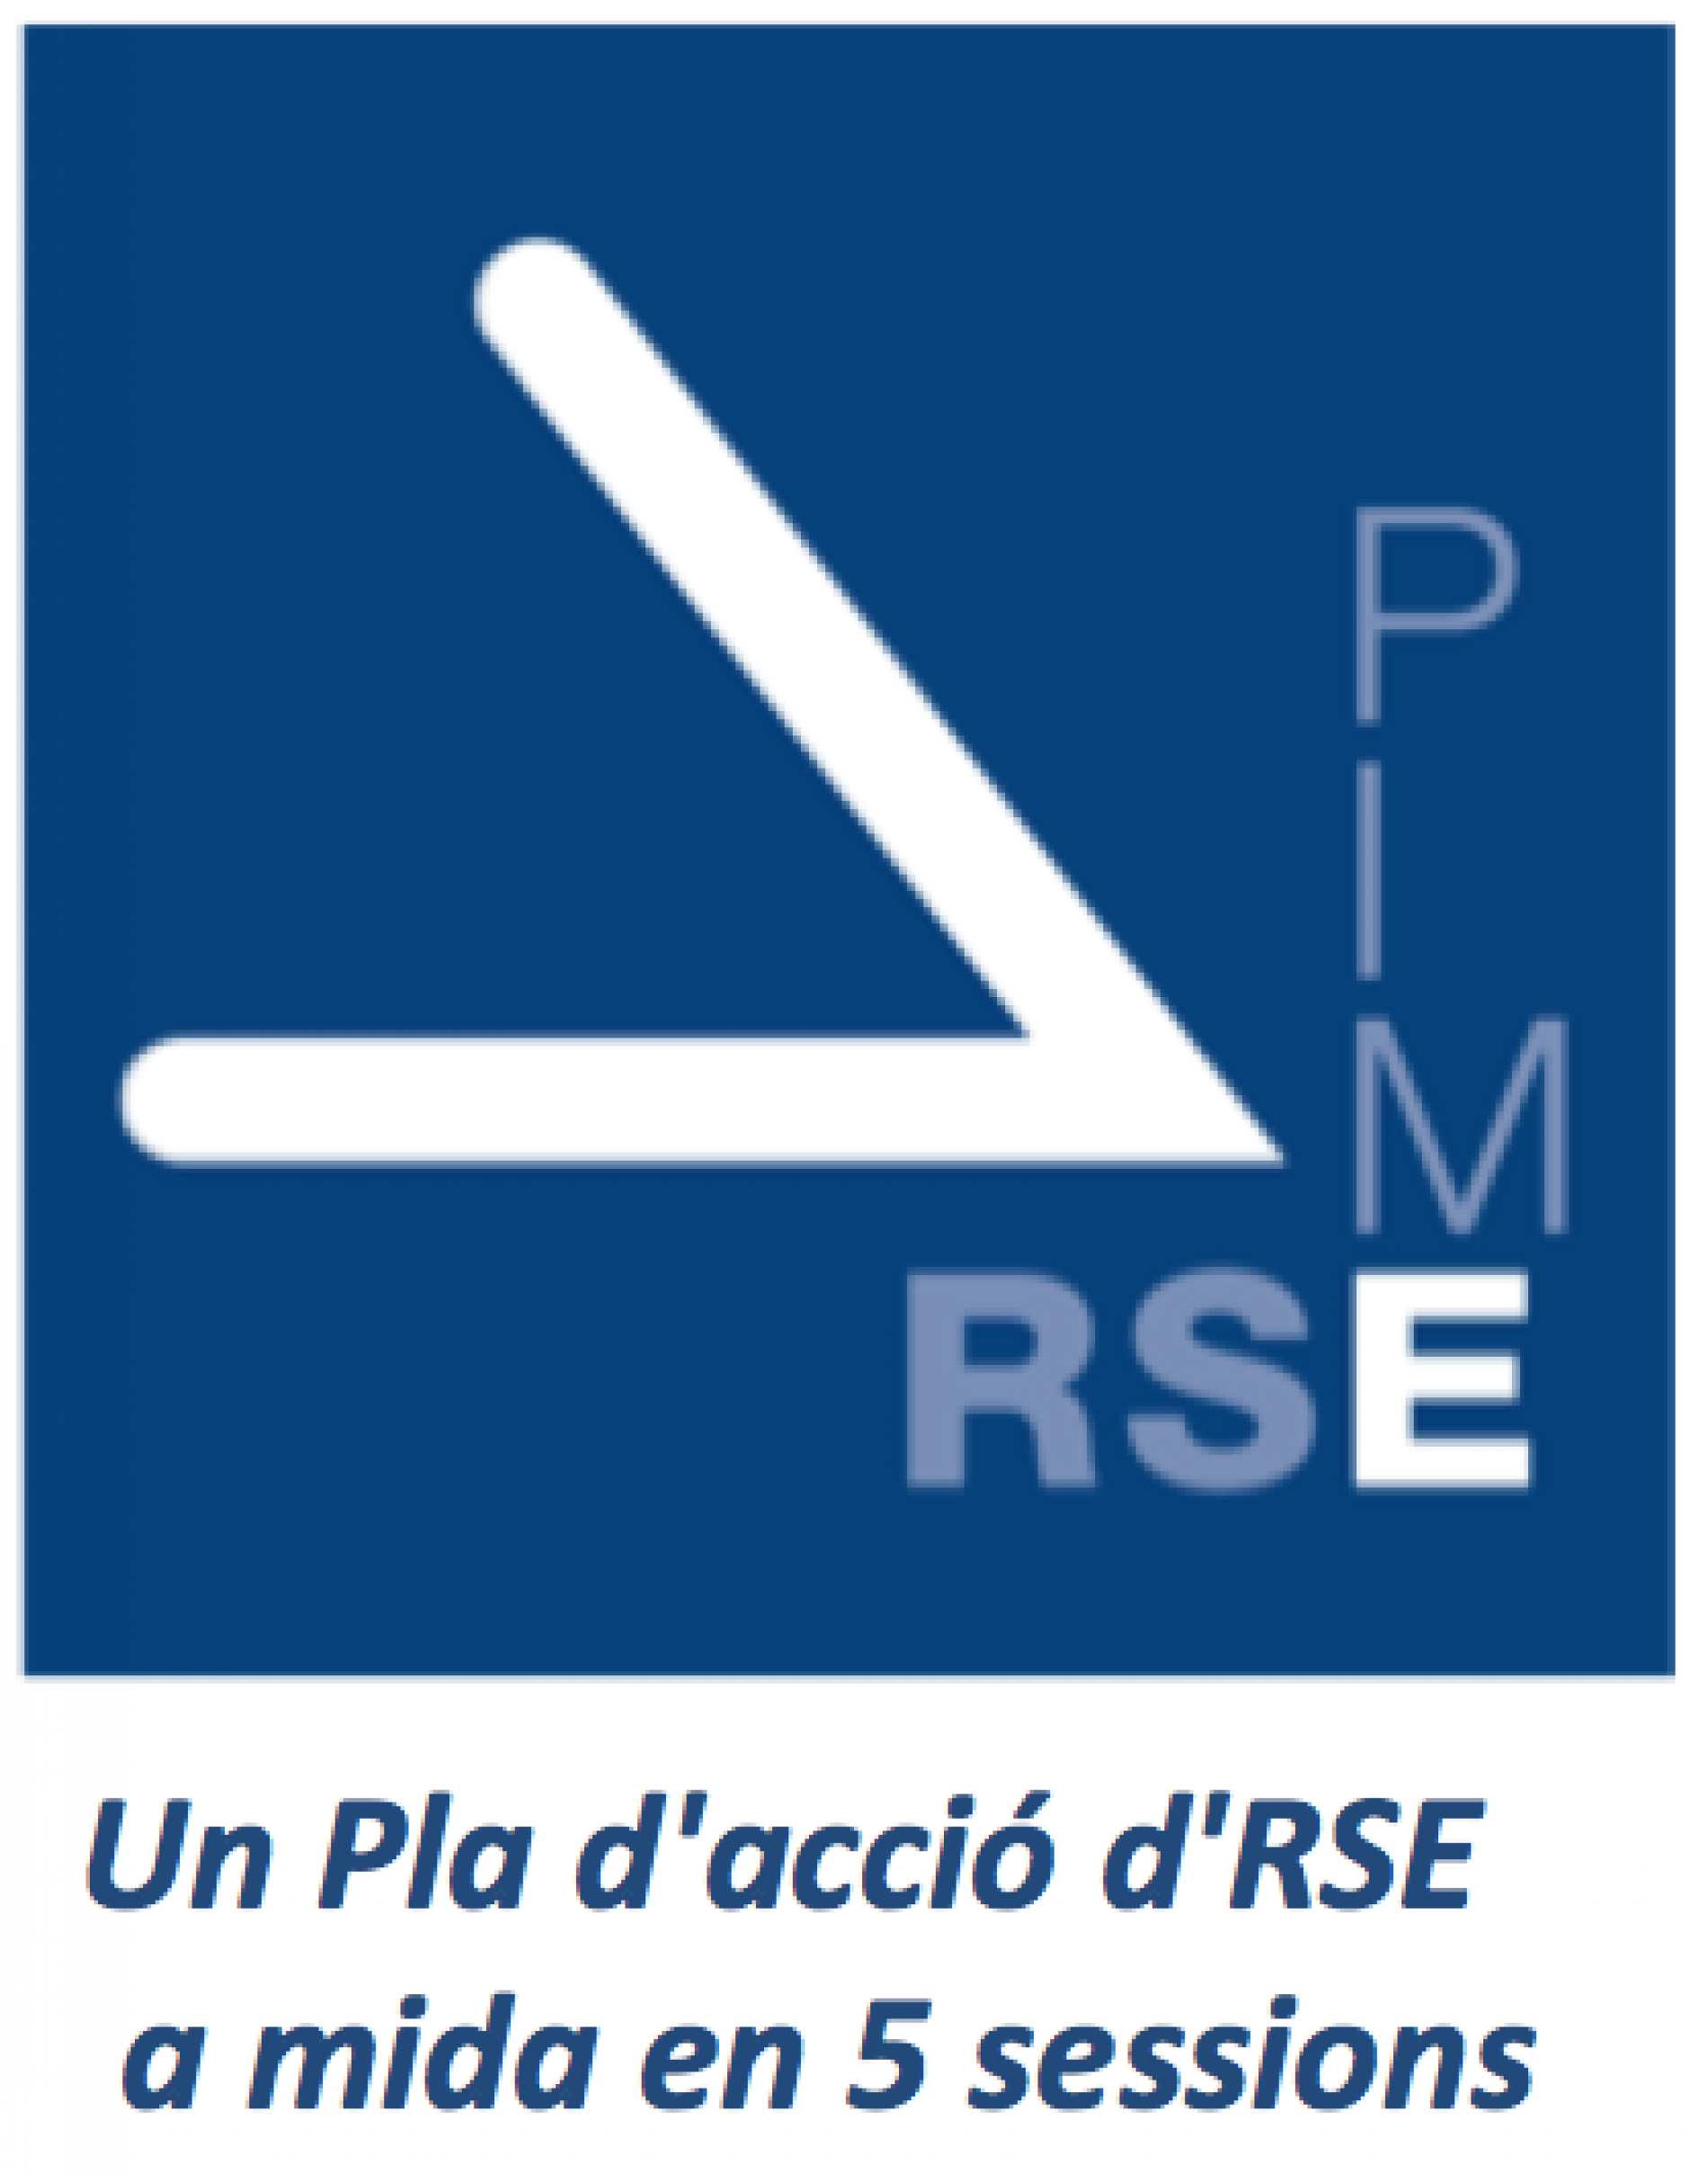 Podeu sol·licitar ser una de les 15 pimes participants al programa RSE.Pime